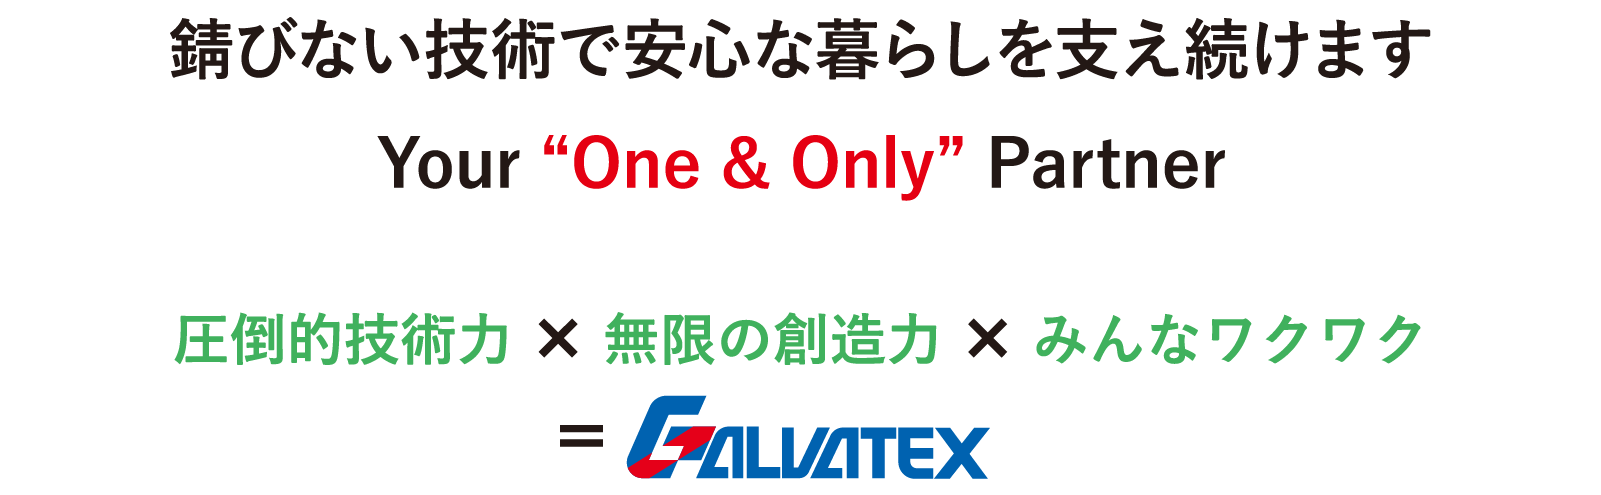 錆びない技術で安心な暮らしを支え続けます Your “One & Only” Partner GALVATEX